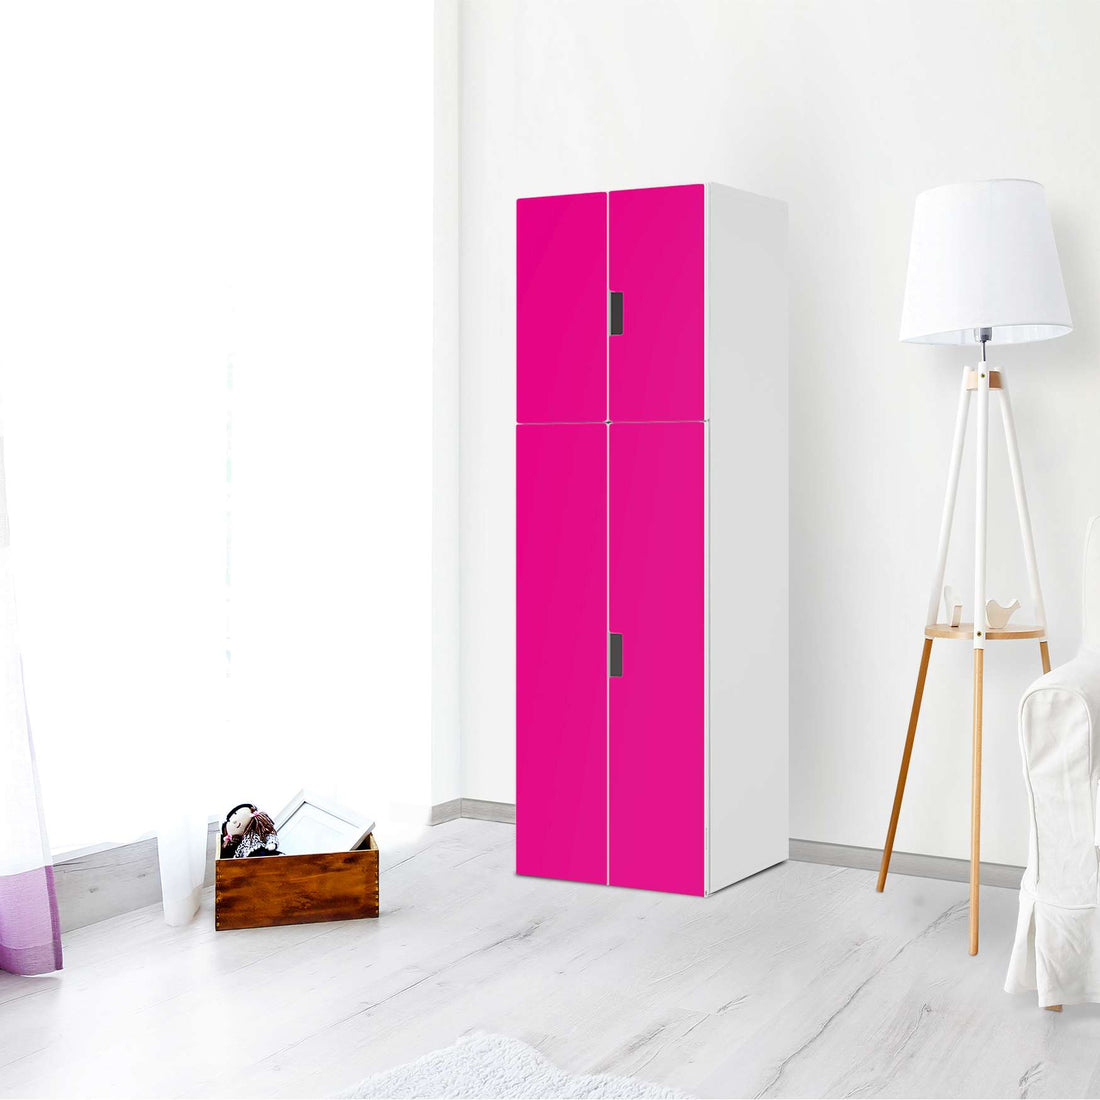 Selbstklebende Folie Pink Dark - IKEA Stuva kombiniert - 2 große Türen und 2 kleine Türen (Kombination 2) - Wohnzimmer